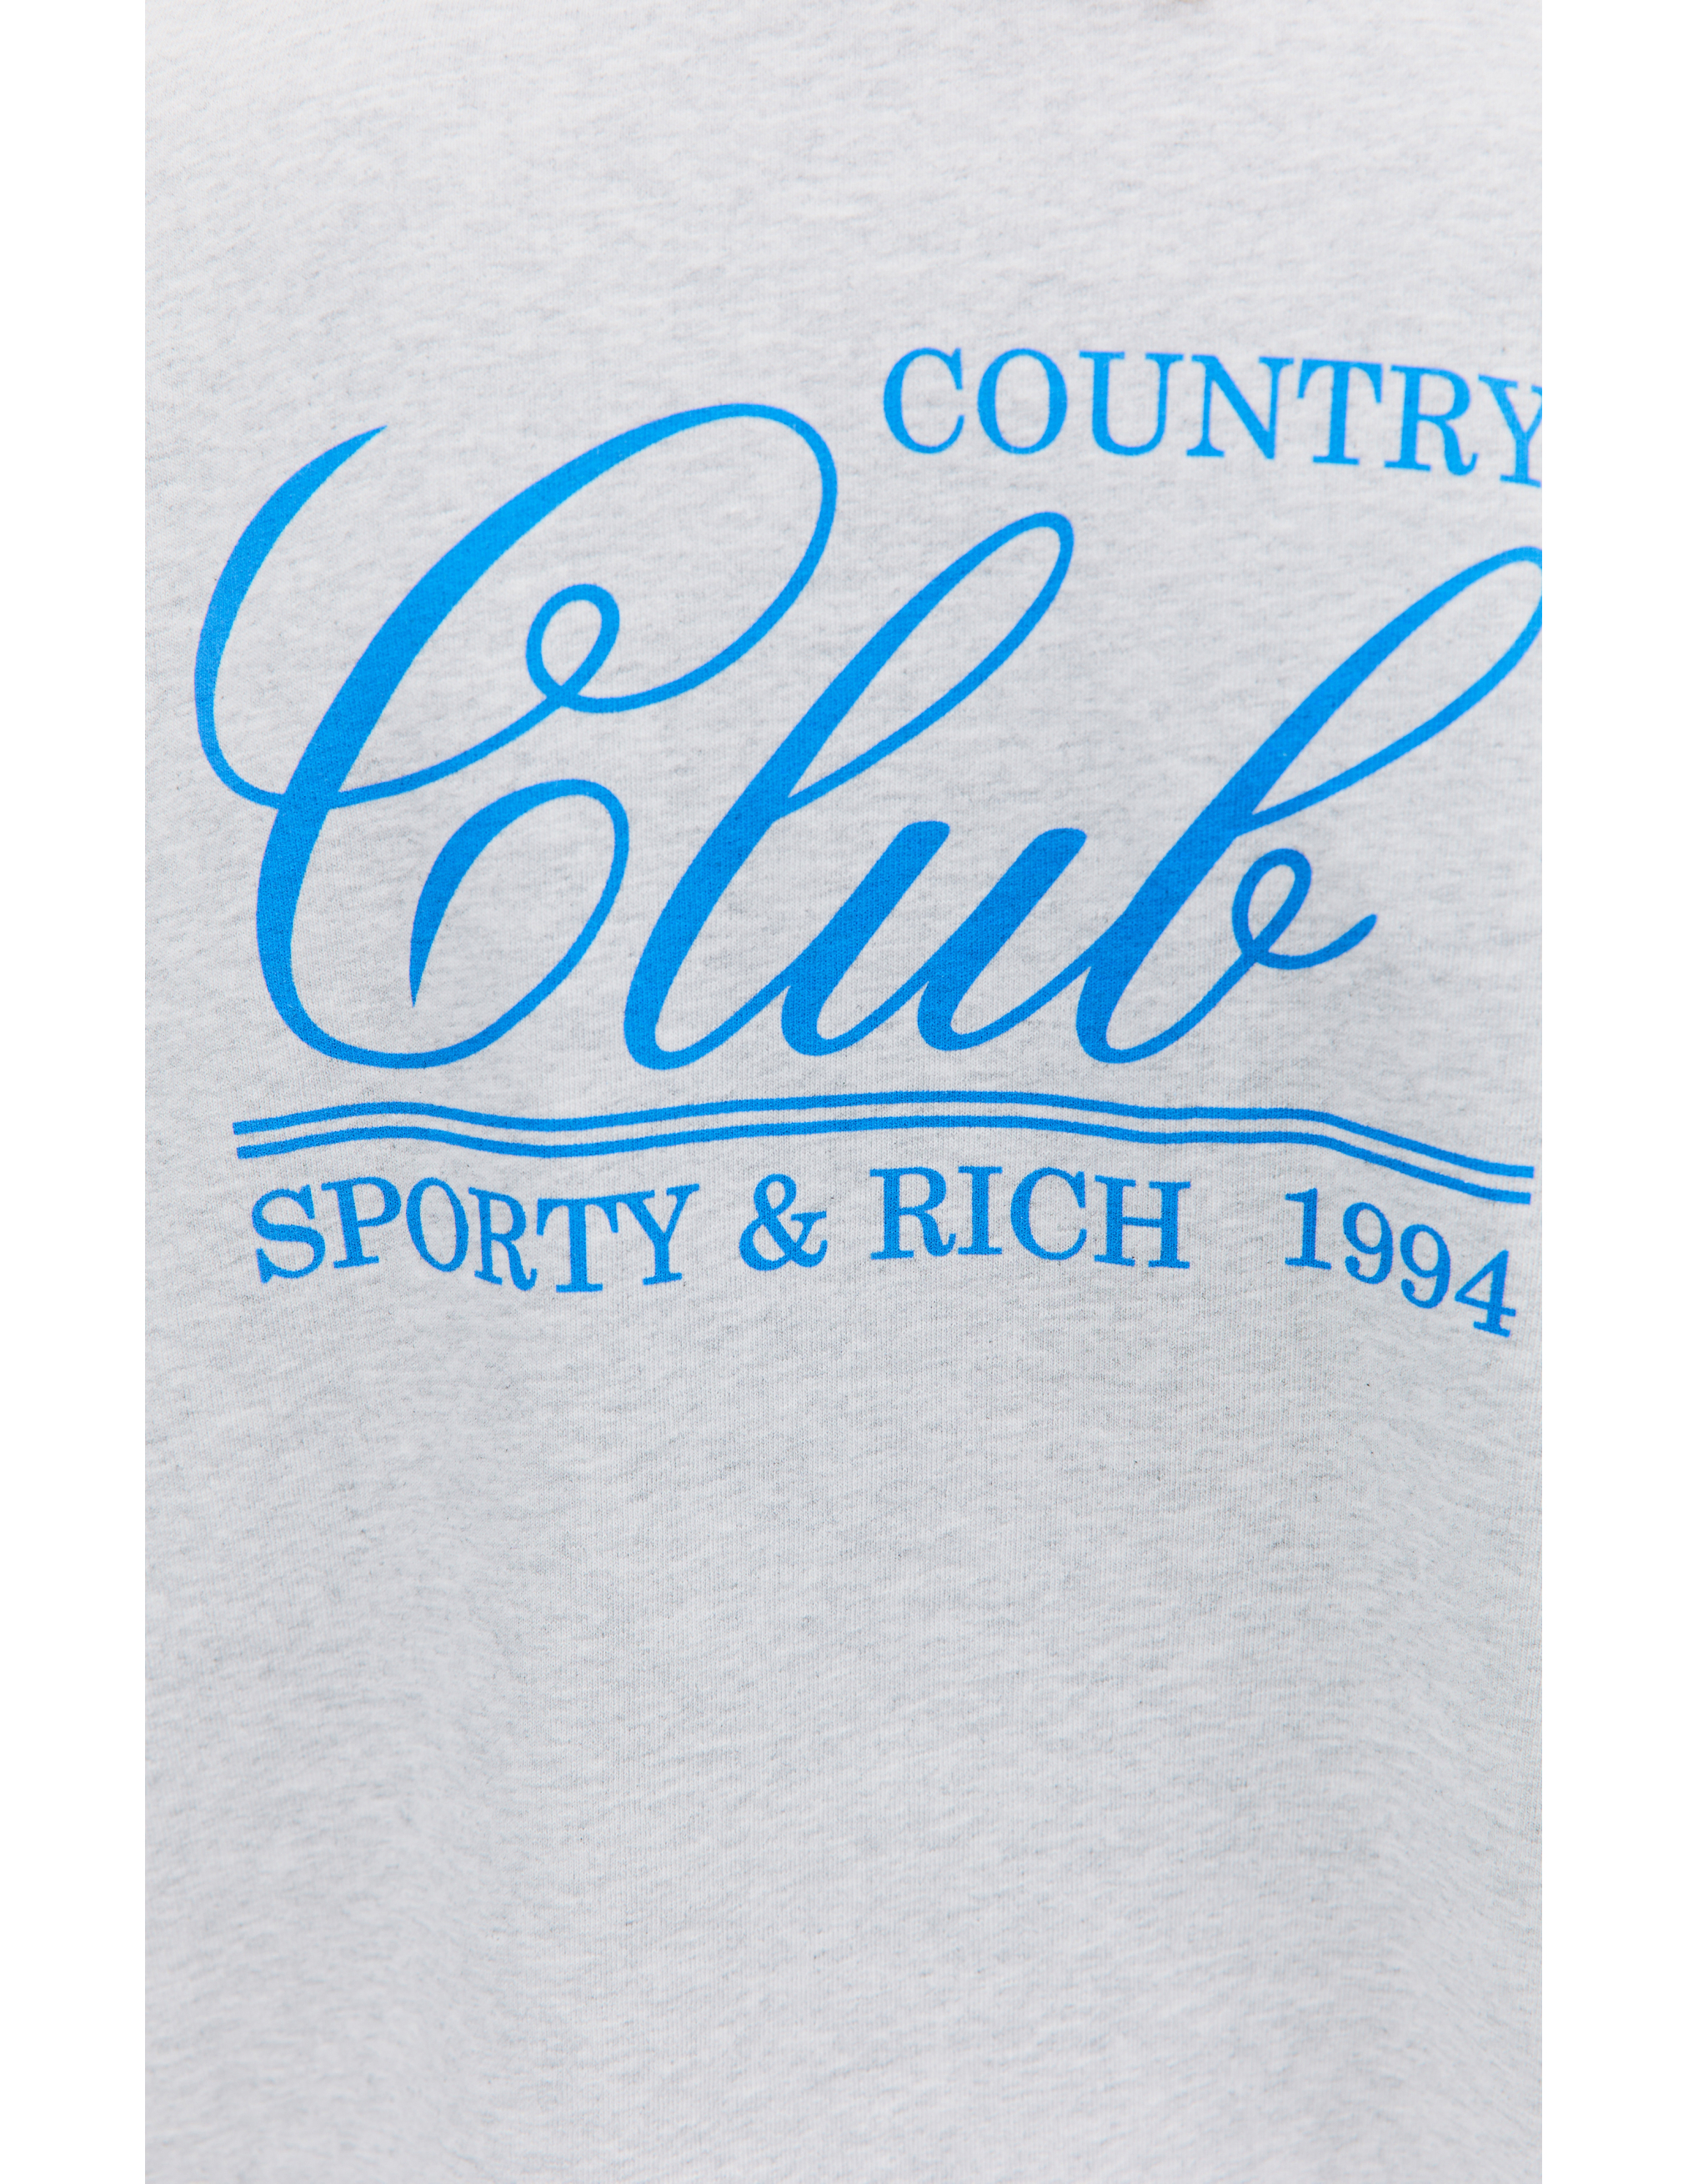 Свитшот с принтом 94 Country Club SPORTY & RICH CR856HG, размер S;M;L;XL - фото 5